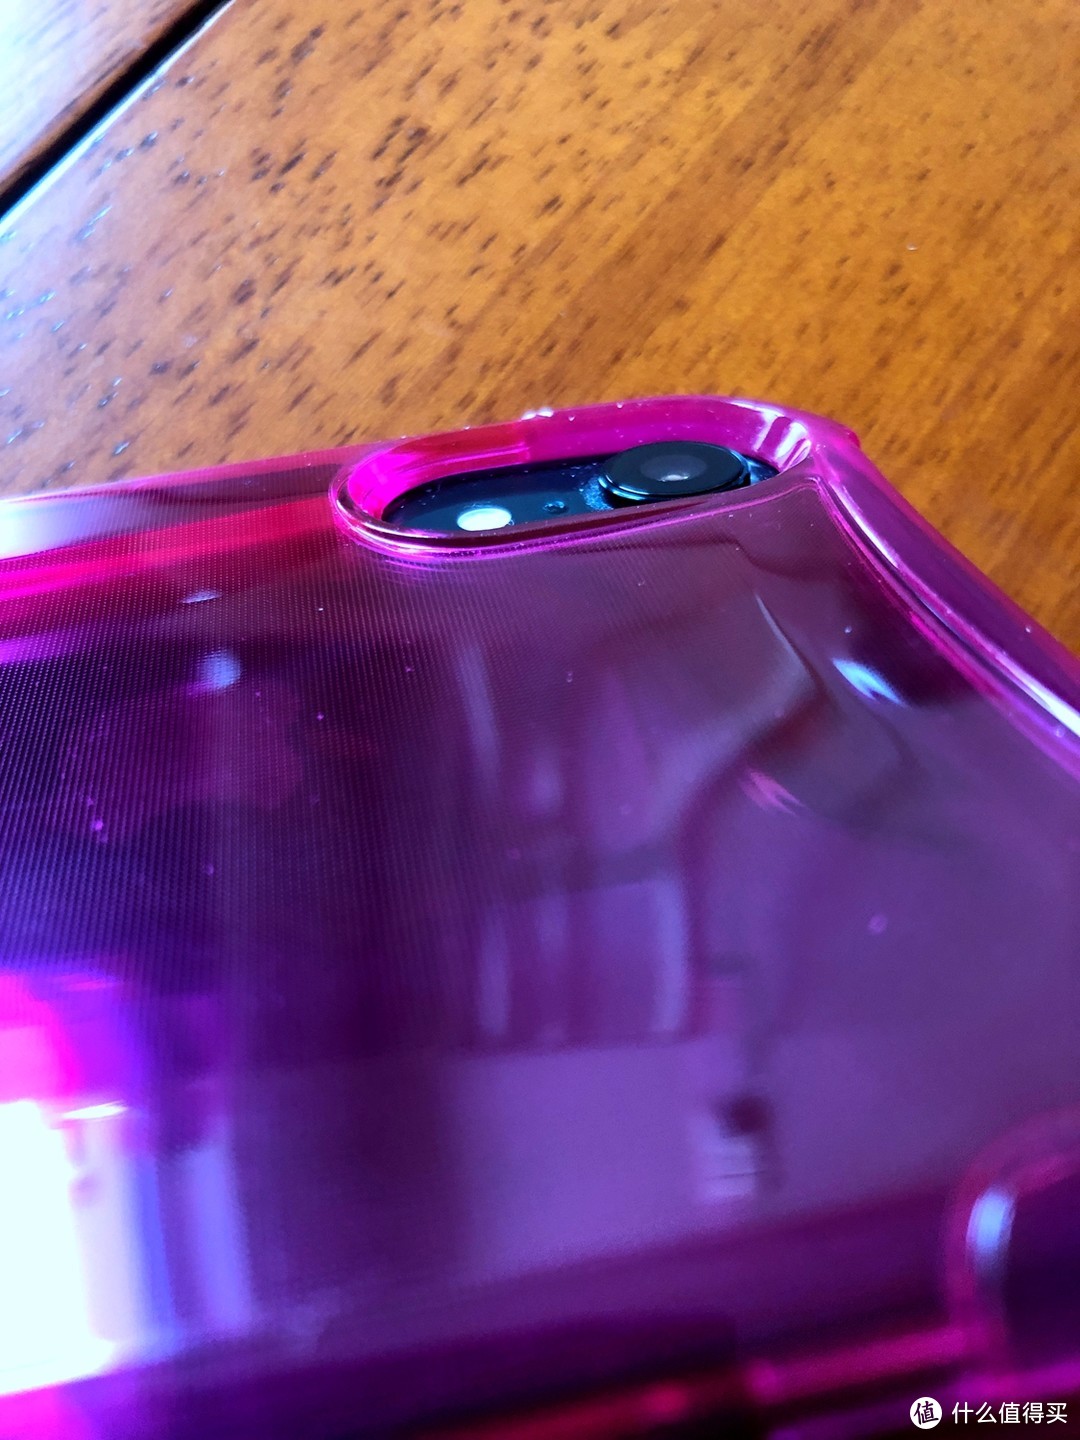 UAG 晶透系列 苹果iPhone Xr (6.1英寸)防摔手机壳/保护壳 开箱简评